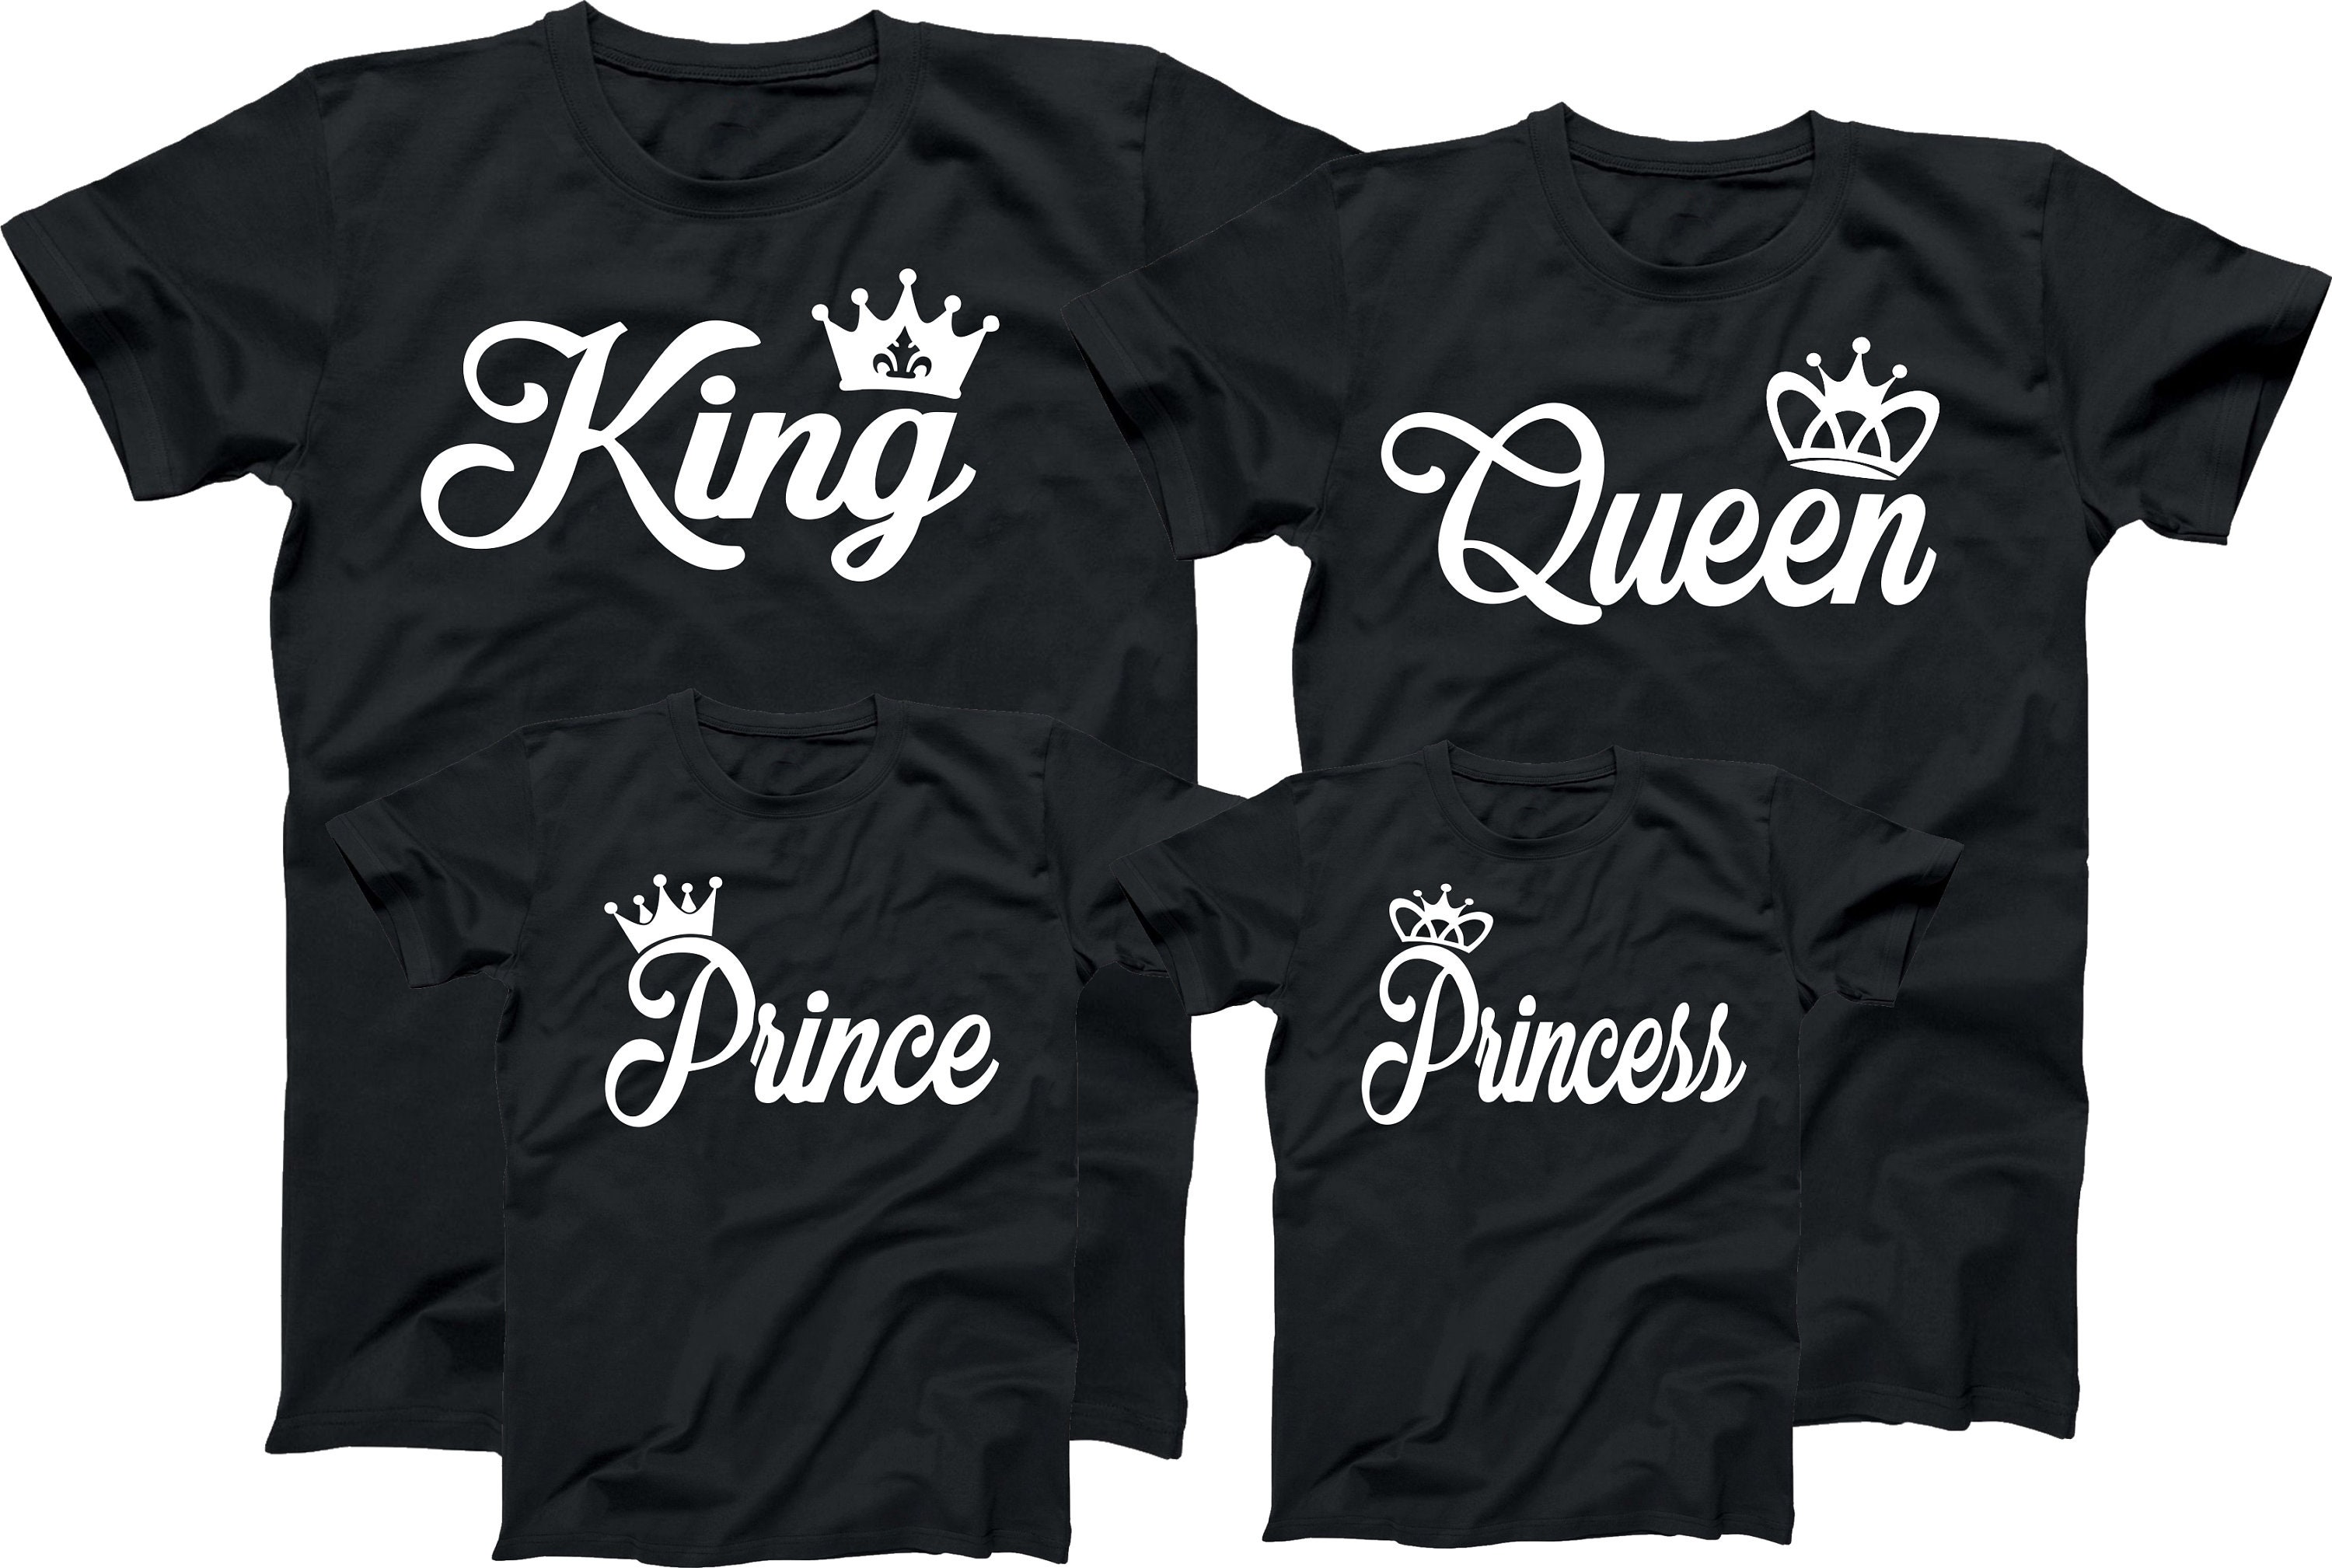 3 camisetas negras Familia Queen, King y prince: 40,00 €